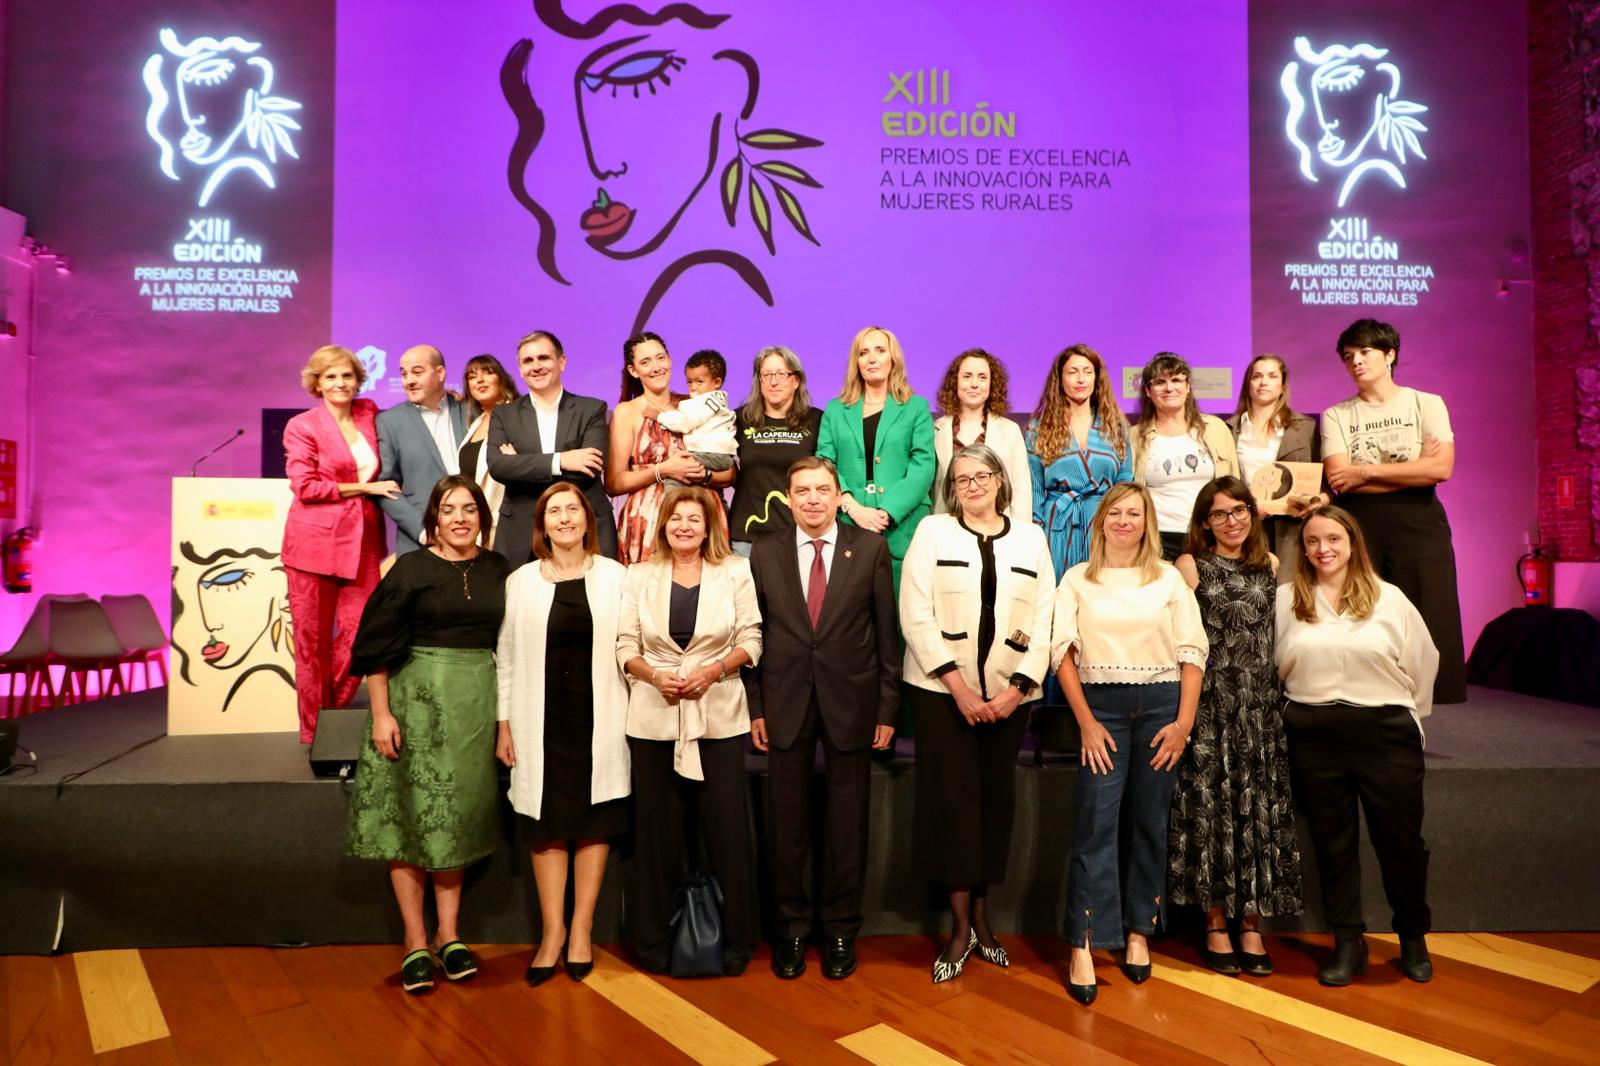 Premios de excelencia a la innovación para mujeres rurales